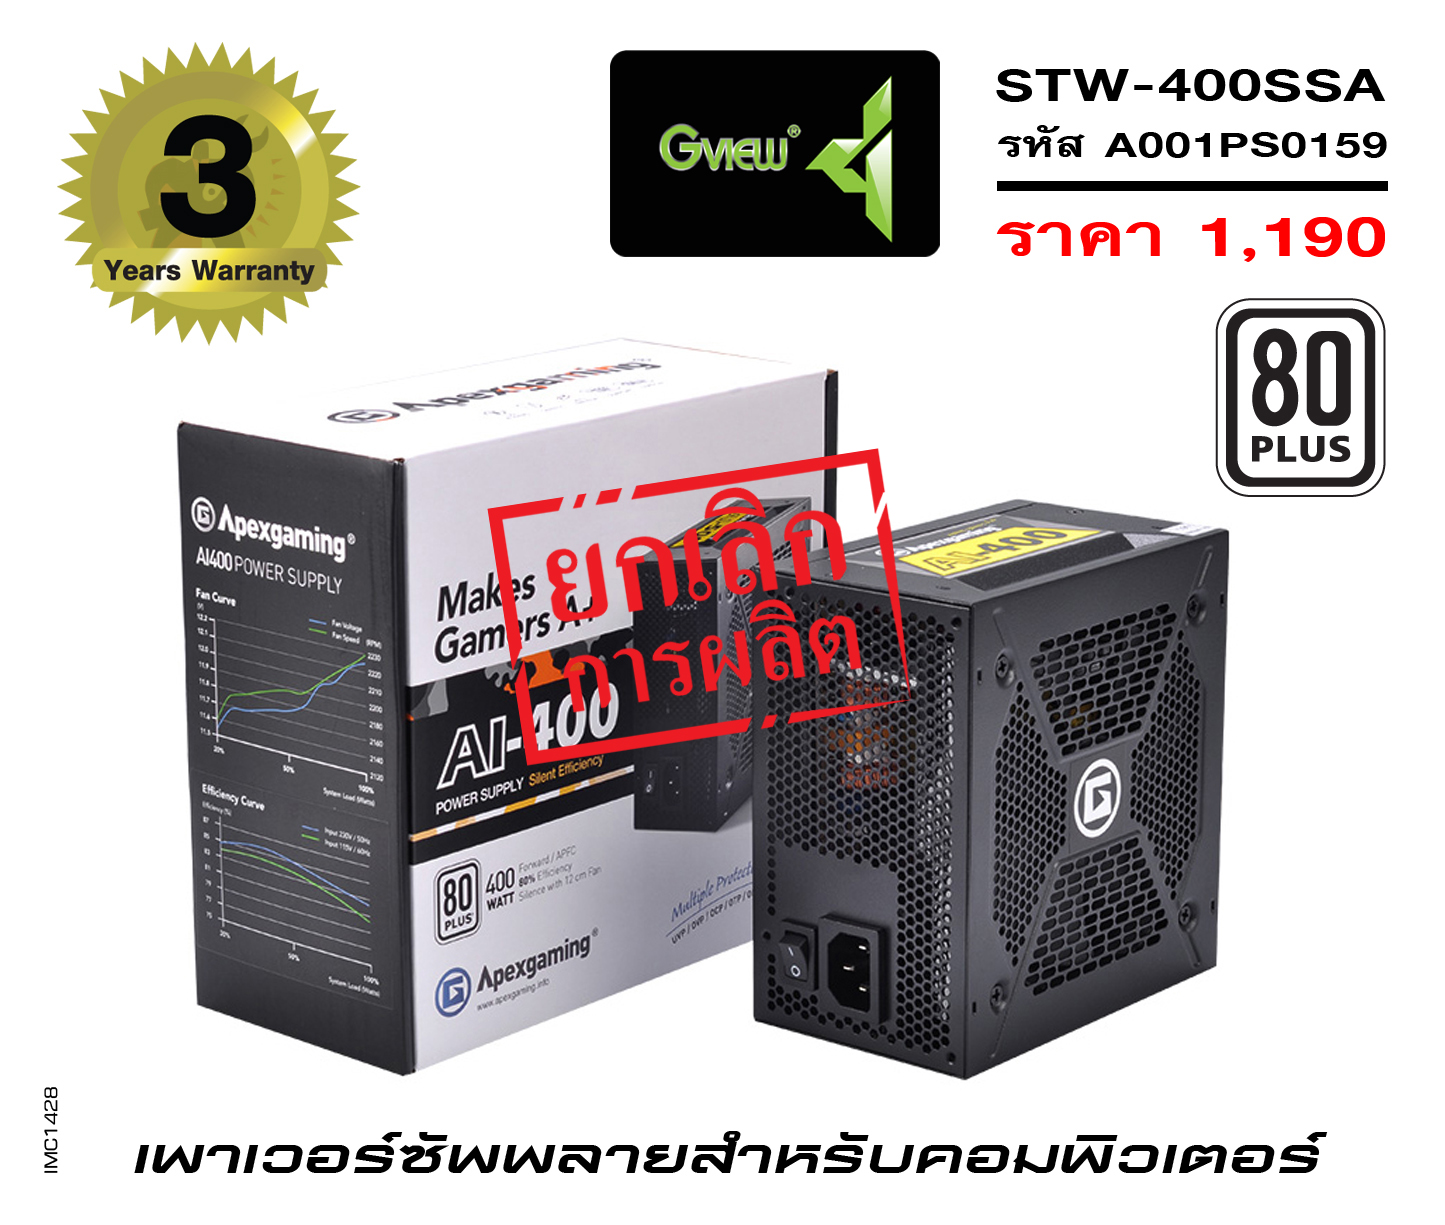 รุ่น STW-400SSA (รหัส A001PS0159)